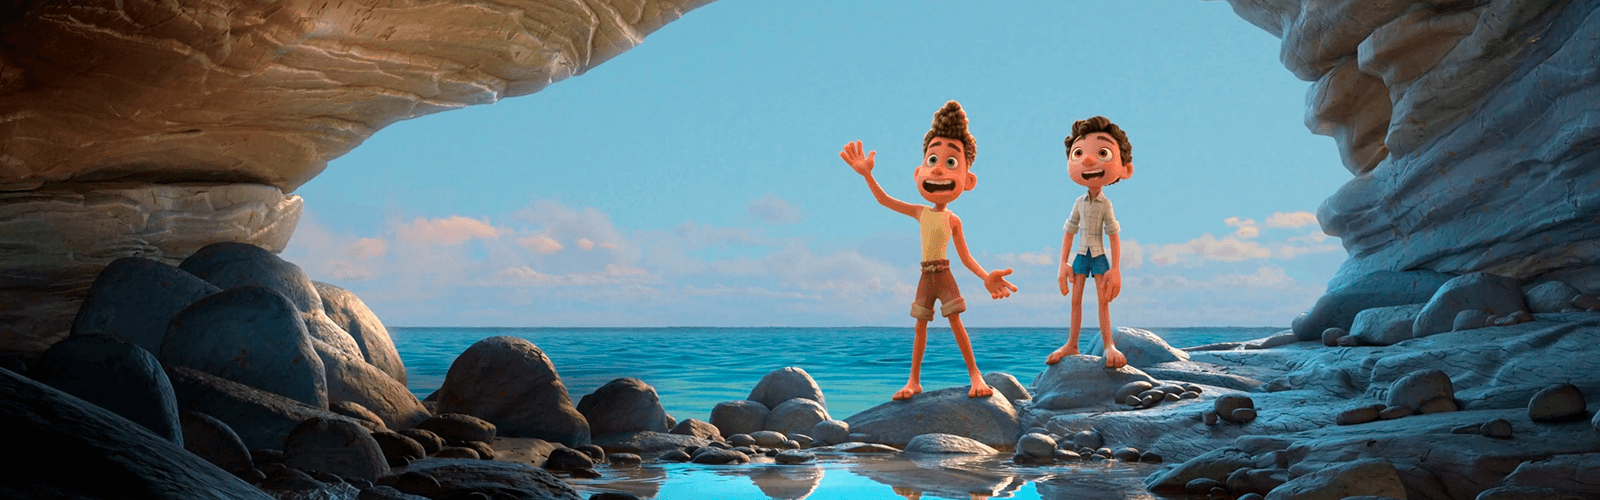 ‘Luca’, nova animação do Disney+, é sobre aceitar nossas diferenças, diz diretor